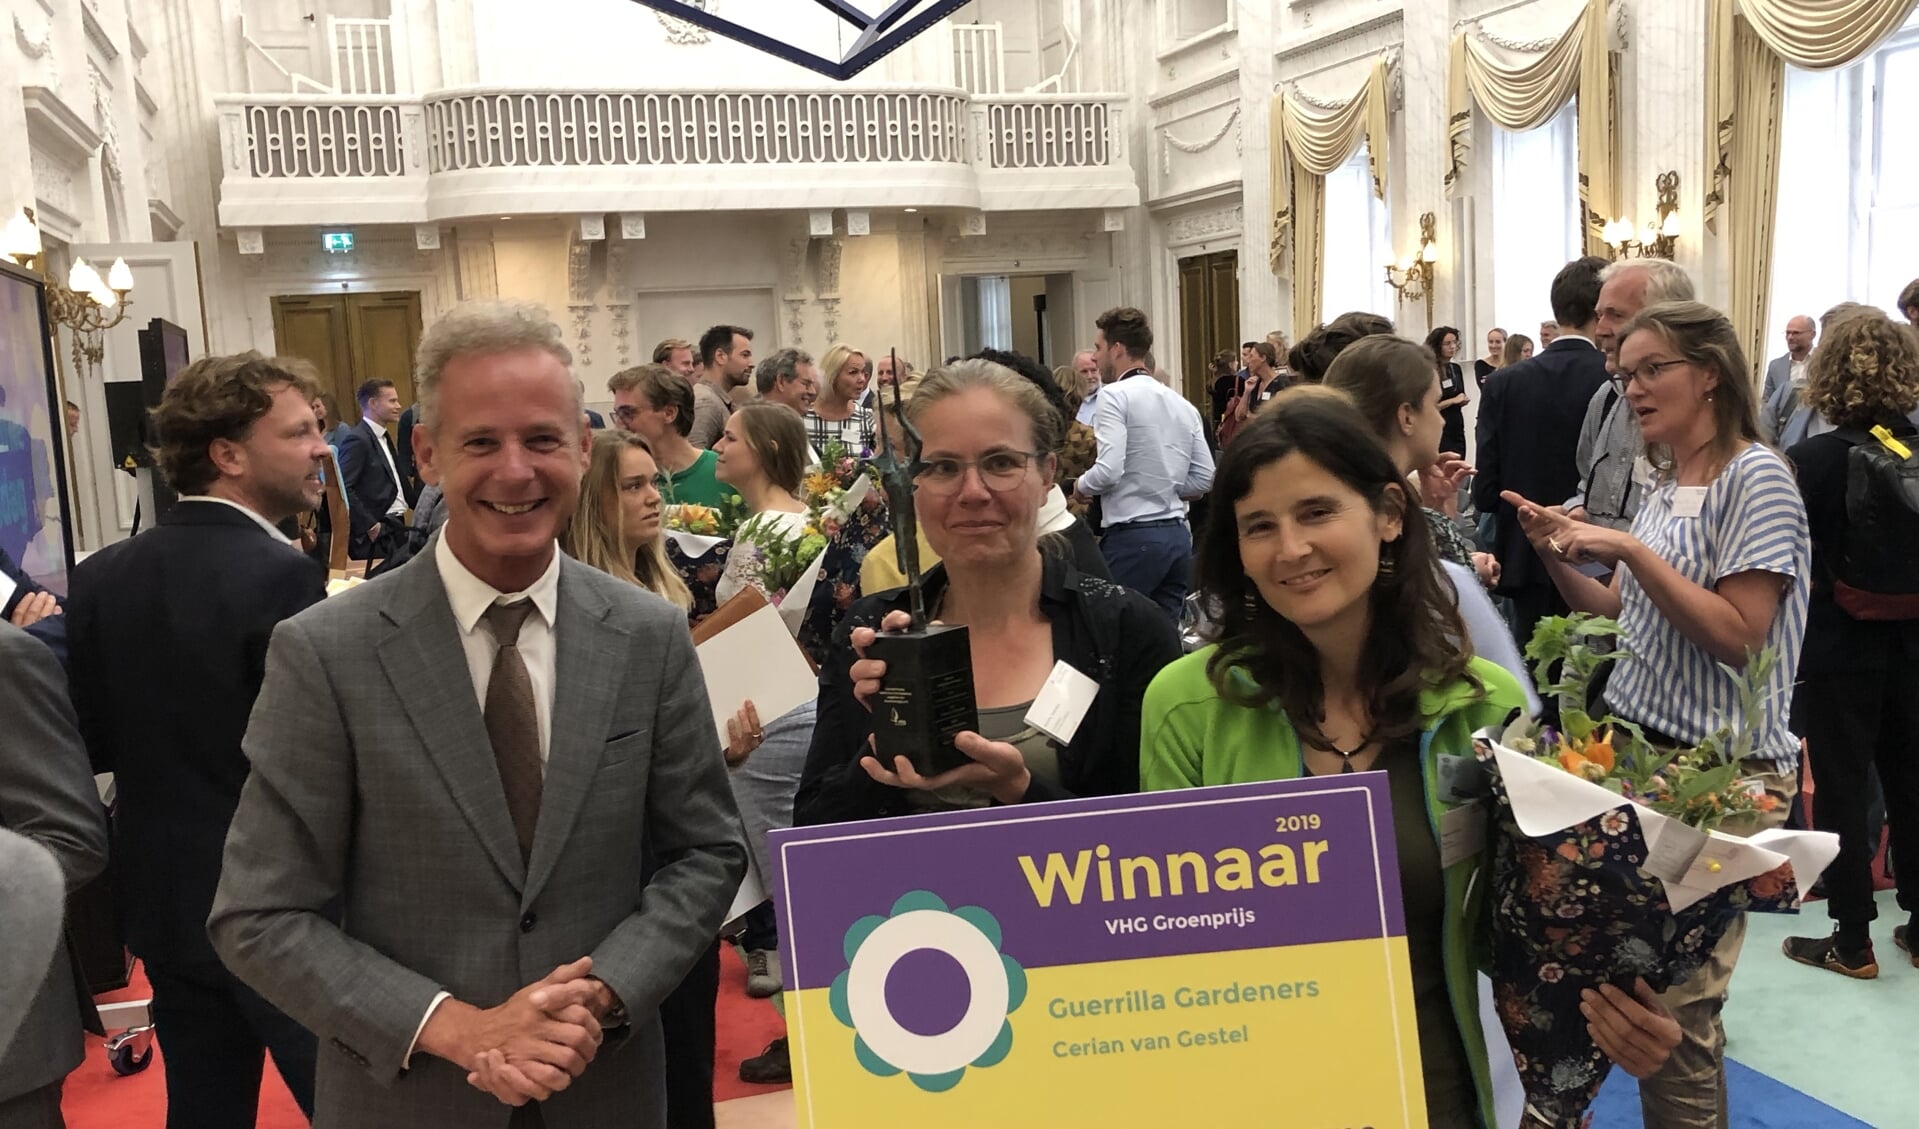 VHG directeur Egbert Roozen met winnaars Marielle Stegeman en Cerian van Gestel